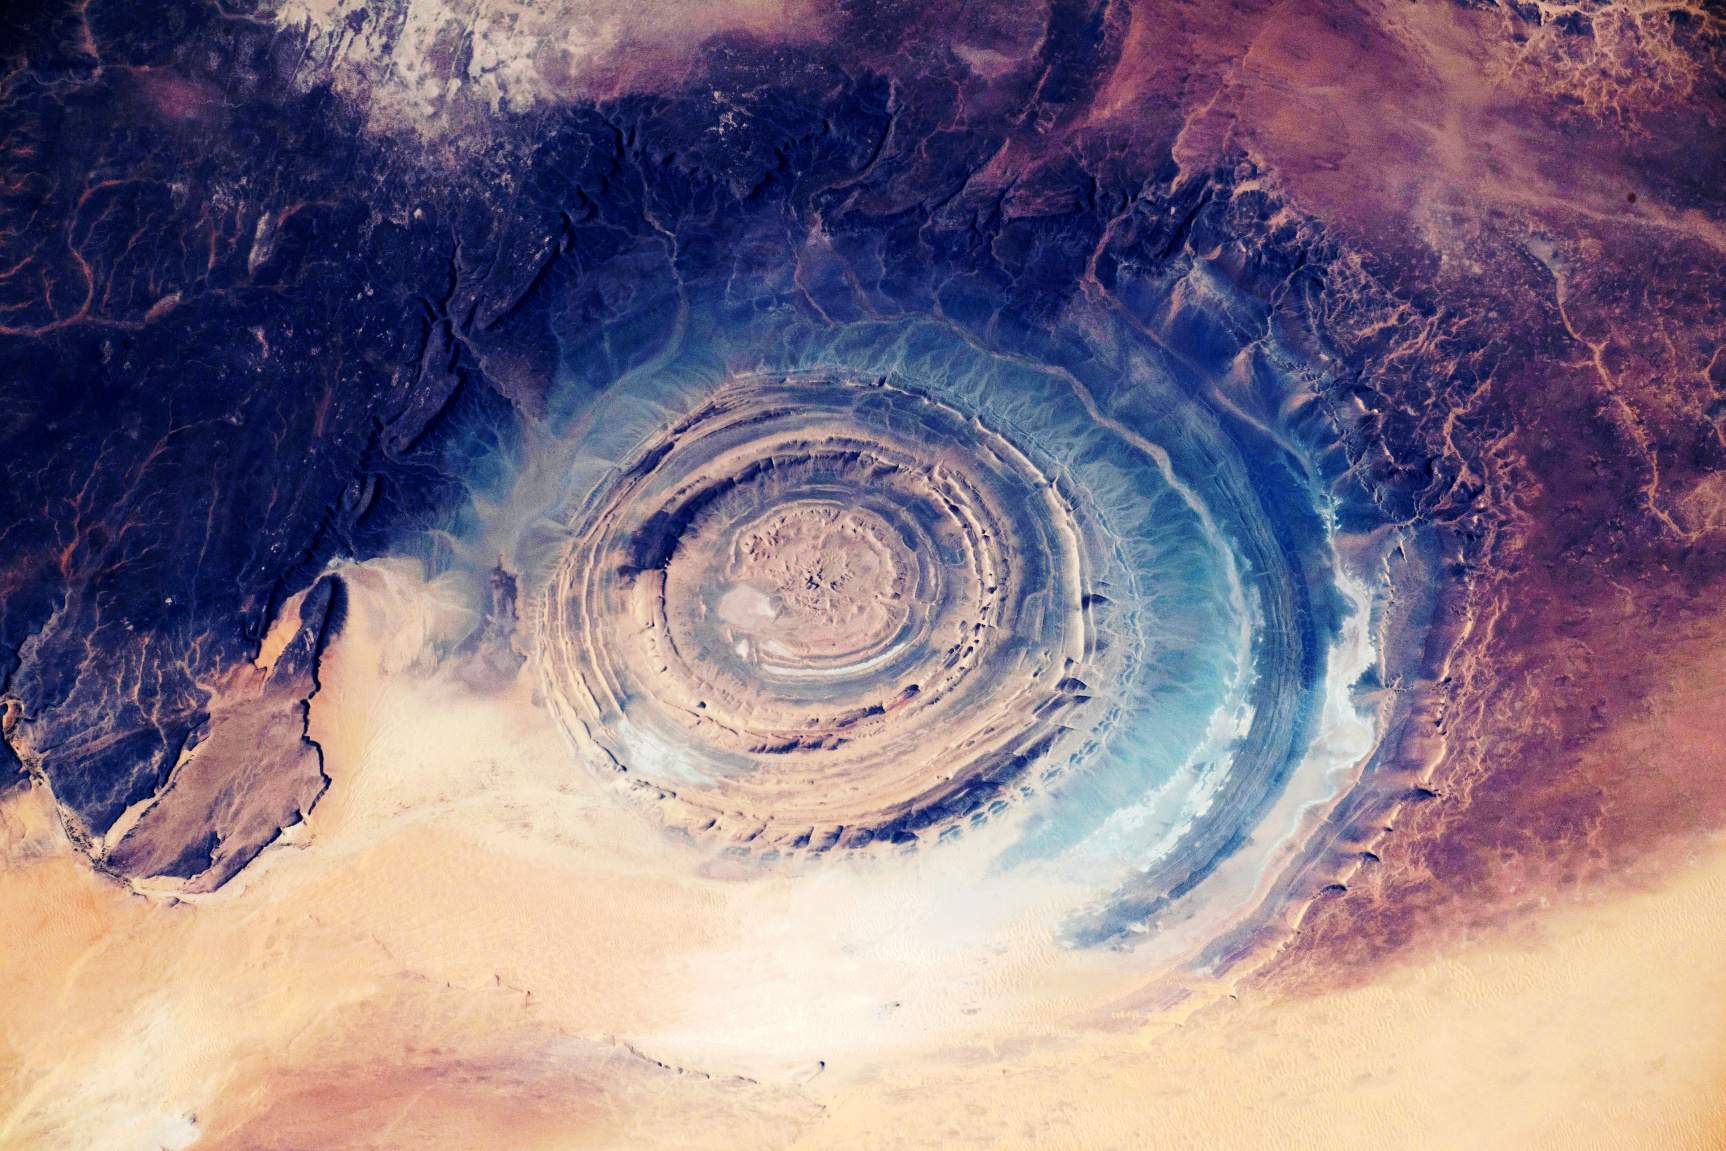 Richat strucuture: Đây có phải là Atlantis, ẩn mình trong tầm nhìn rõ ràng ở Sahara không? 4